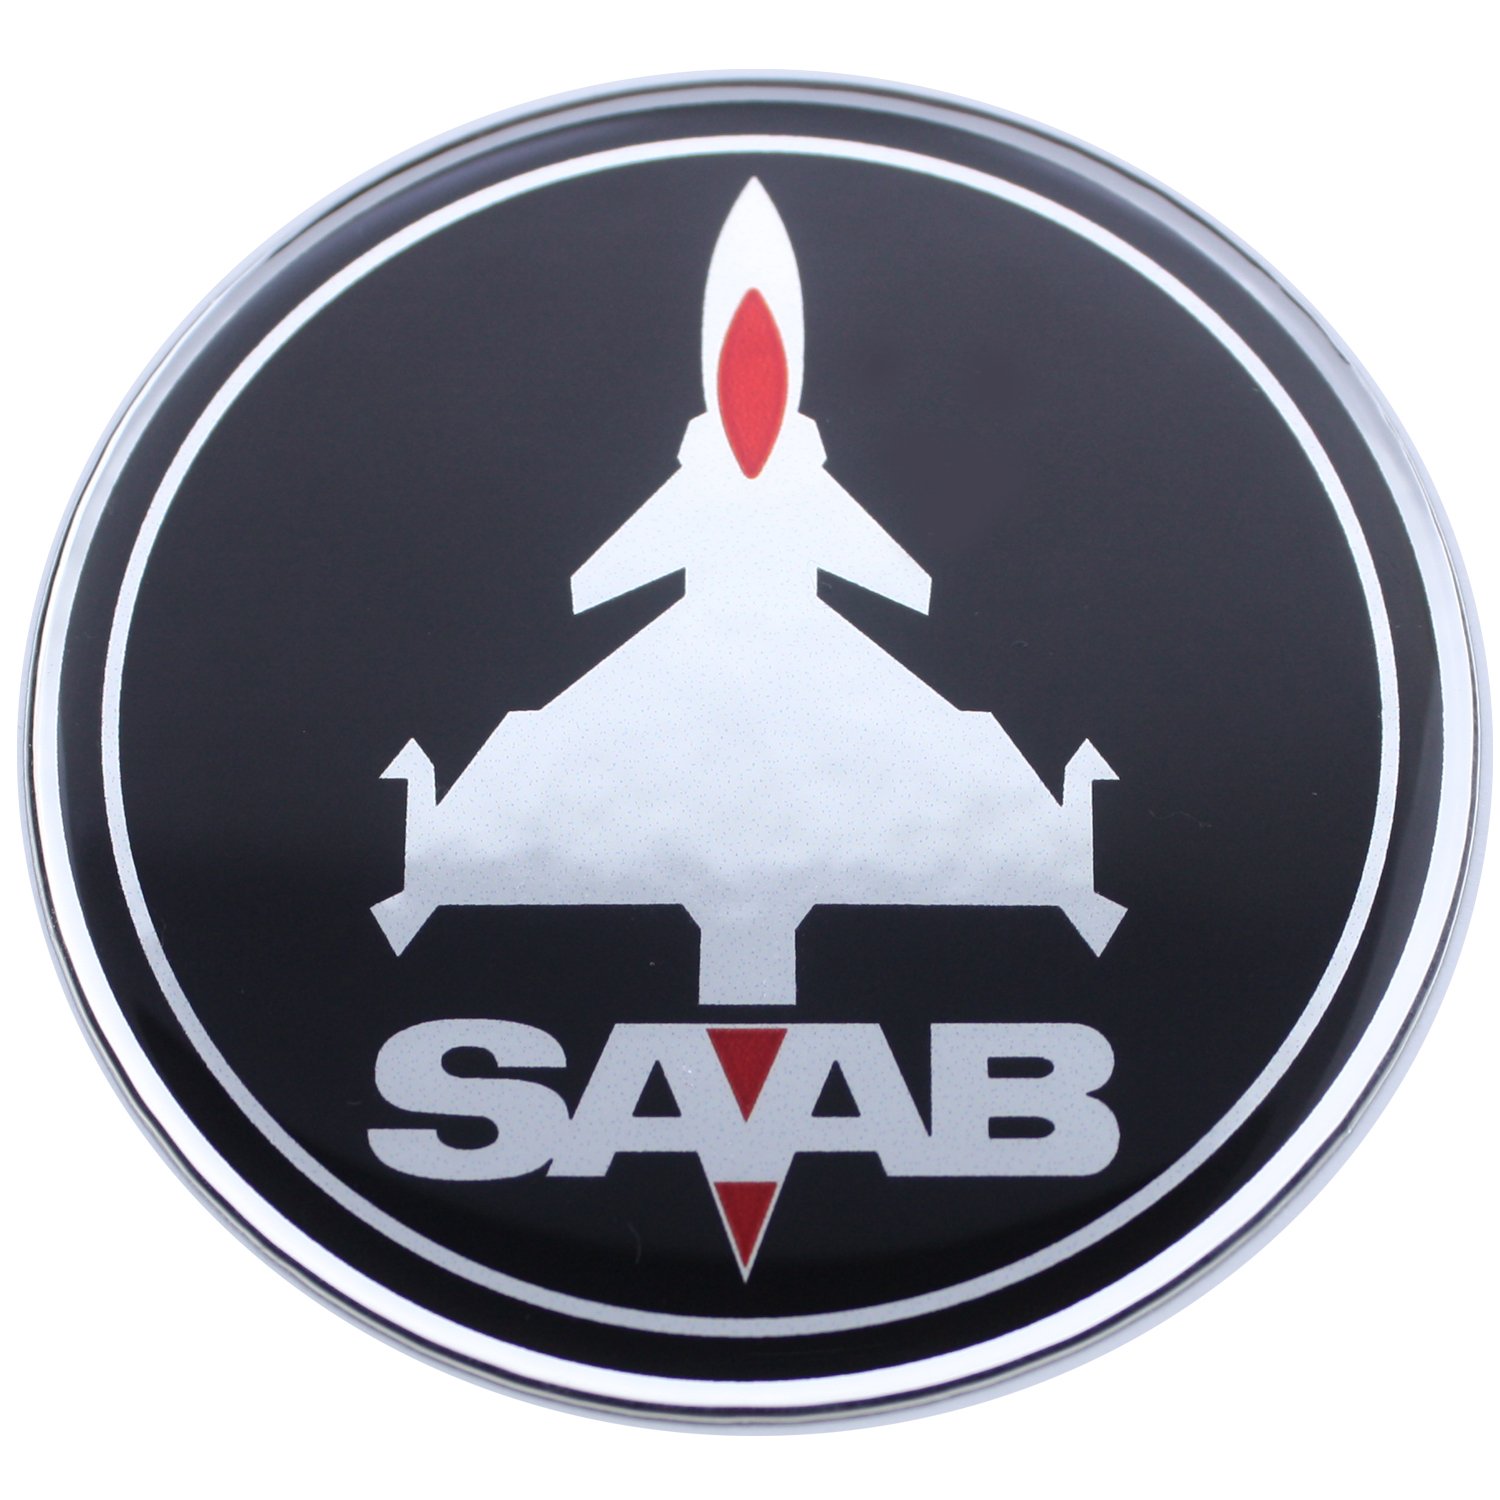 63,5 mm Jet-Flugzeug SAB schwarz rot Chrom Motorhaube Haube Kofferraum Luke Abzeichen Emblem gewölbte 3D Aufkleber selbstklebende Rückseite 9-3 von EU-Decals